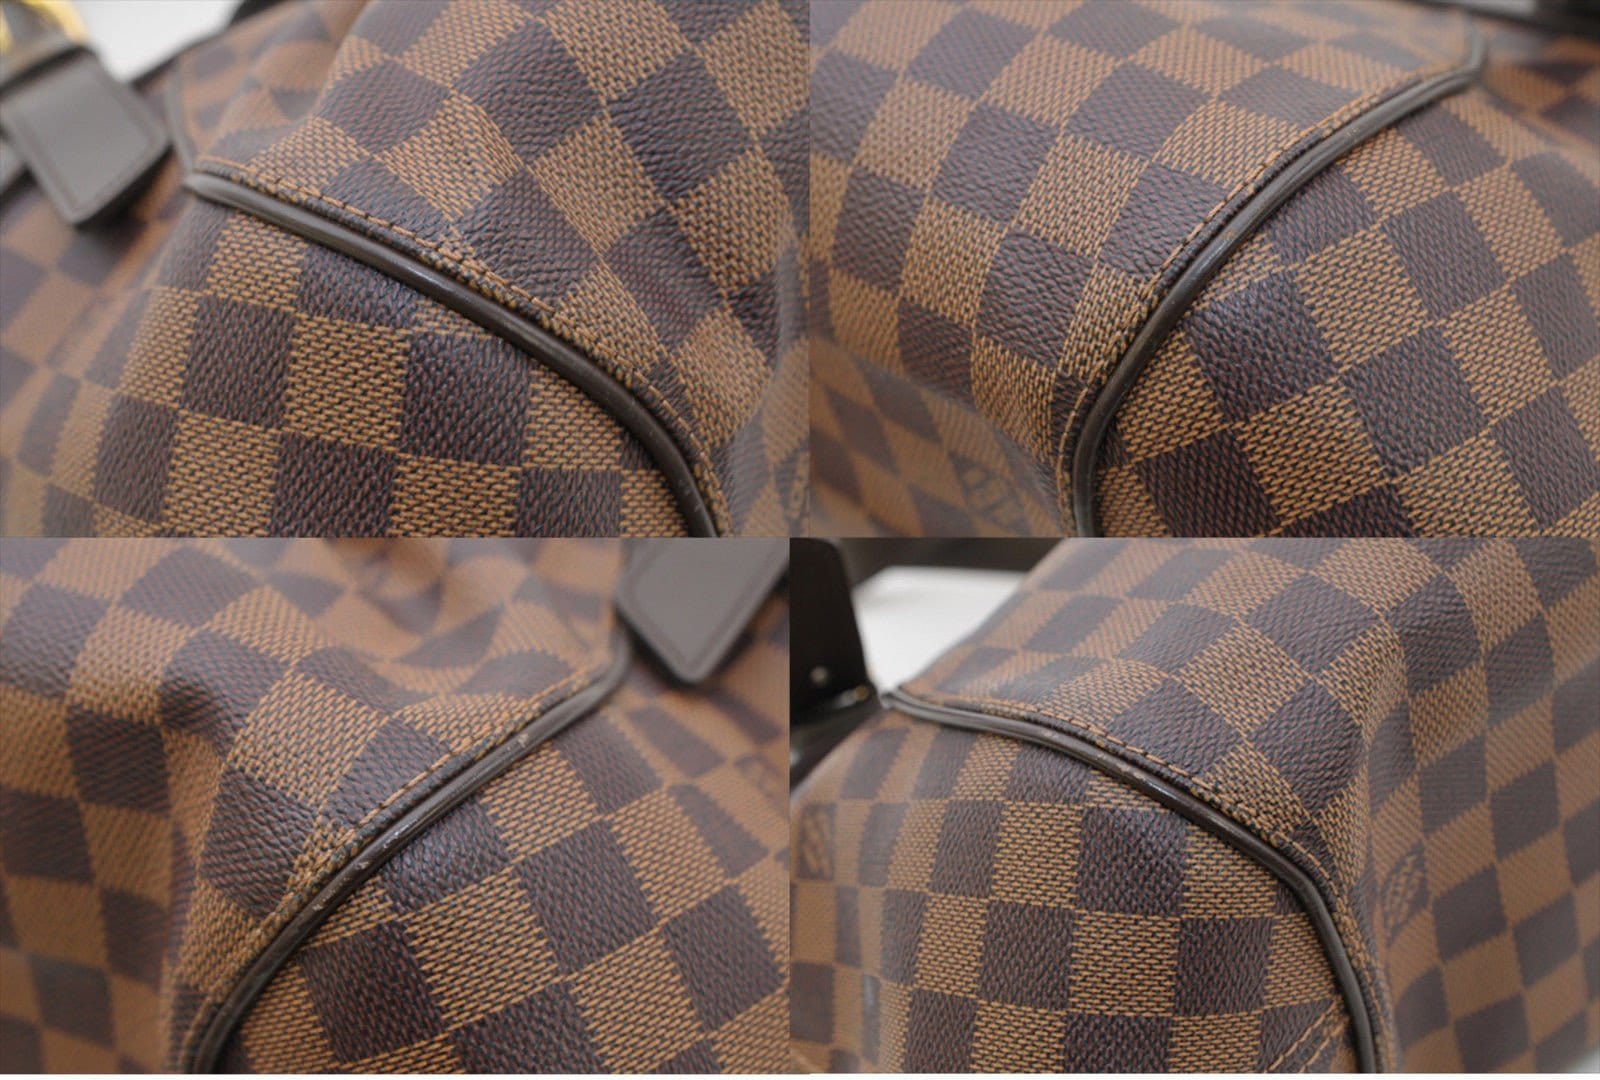 Louis Vuitton N41542 Damier Canvas Sistina PM Shoulder Bag